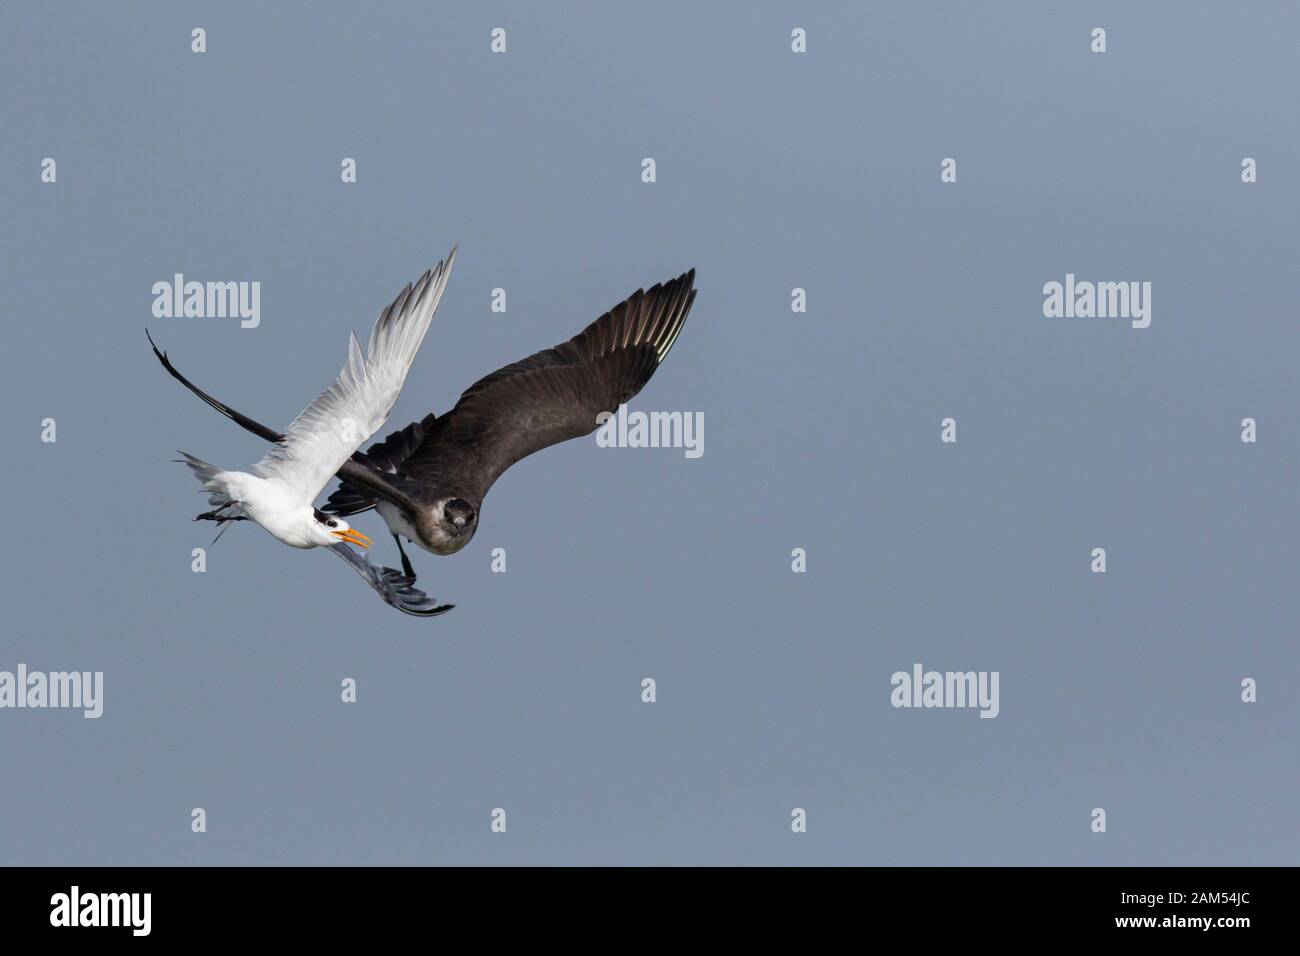 Tern and Arctic Skua in Flight for Fish seen off coast at Alibaug, Maharashtra, India Stock Photo